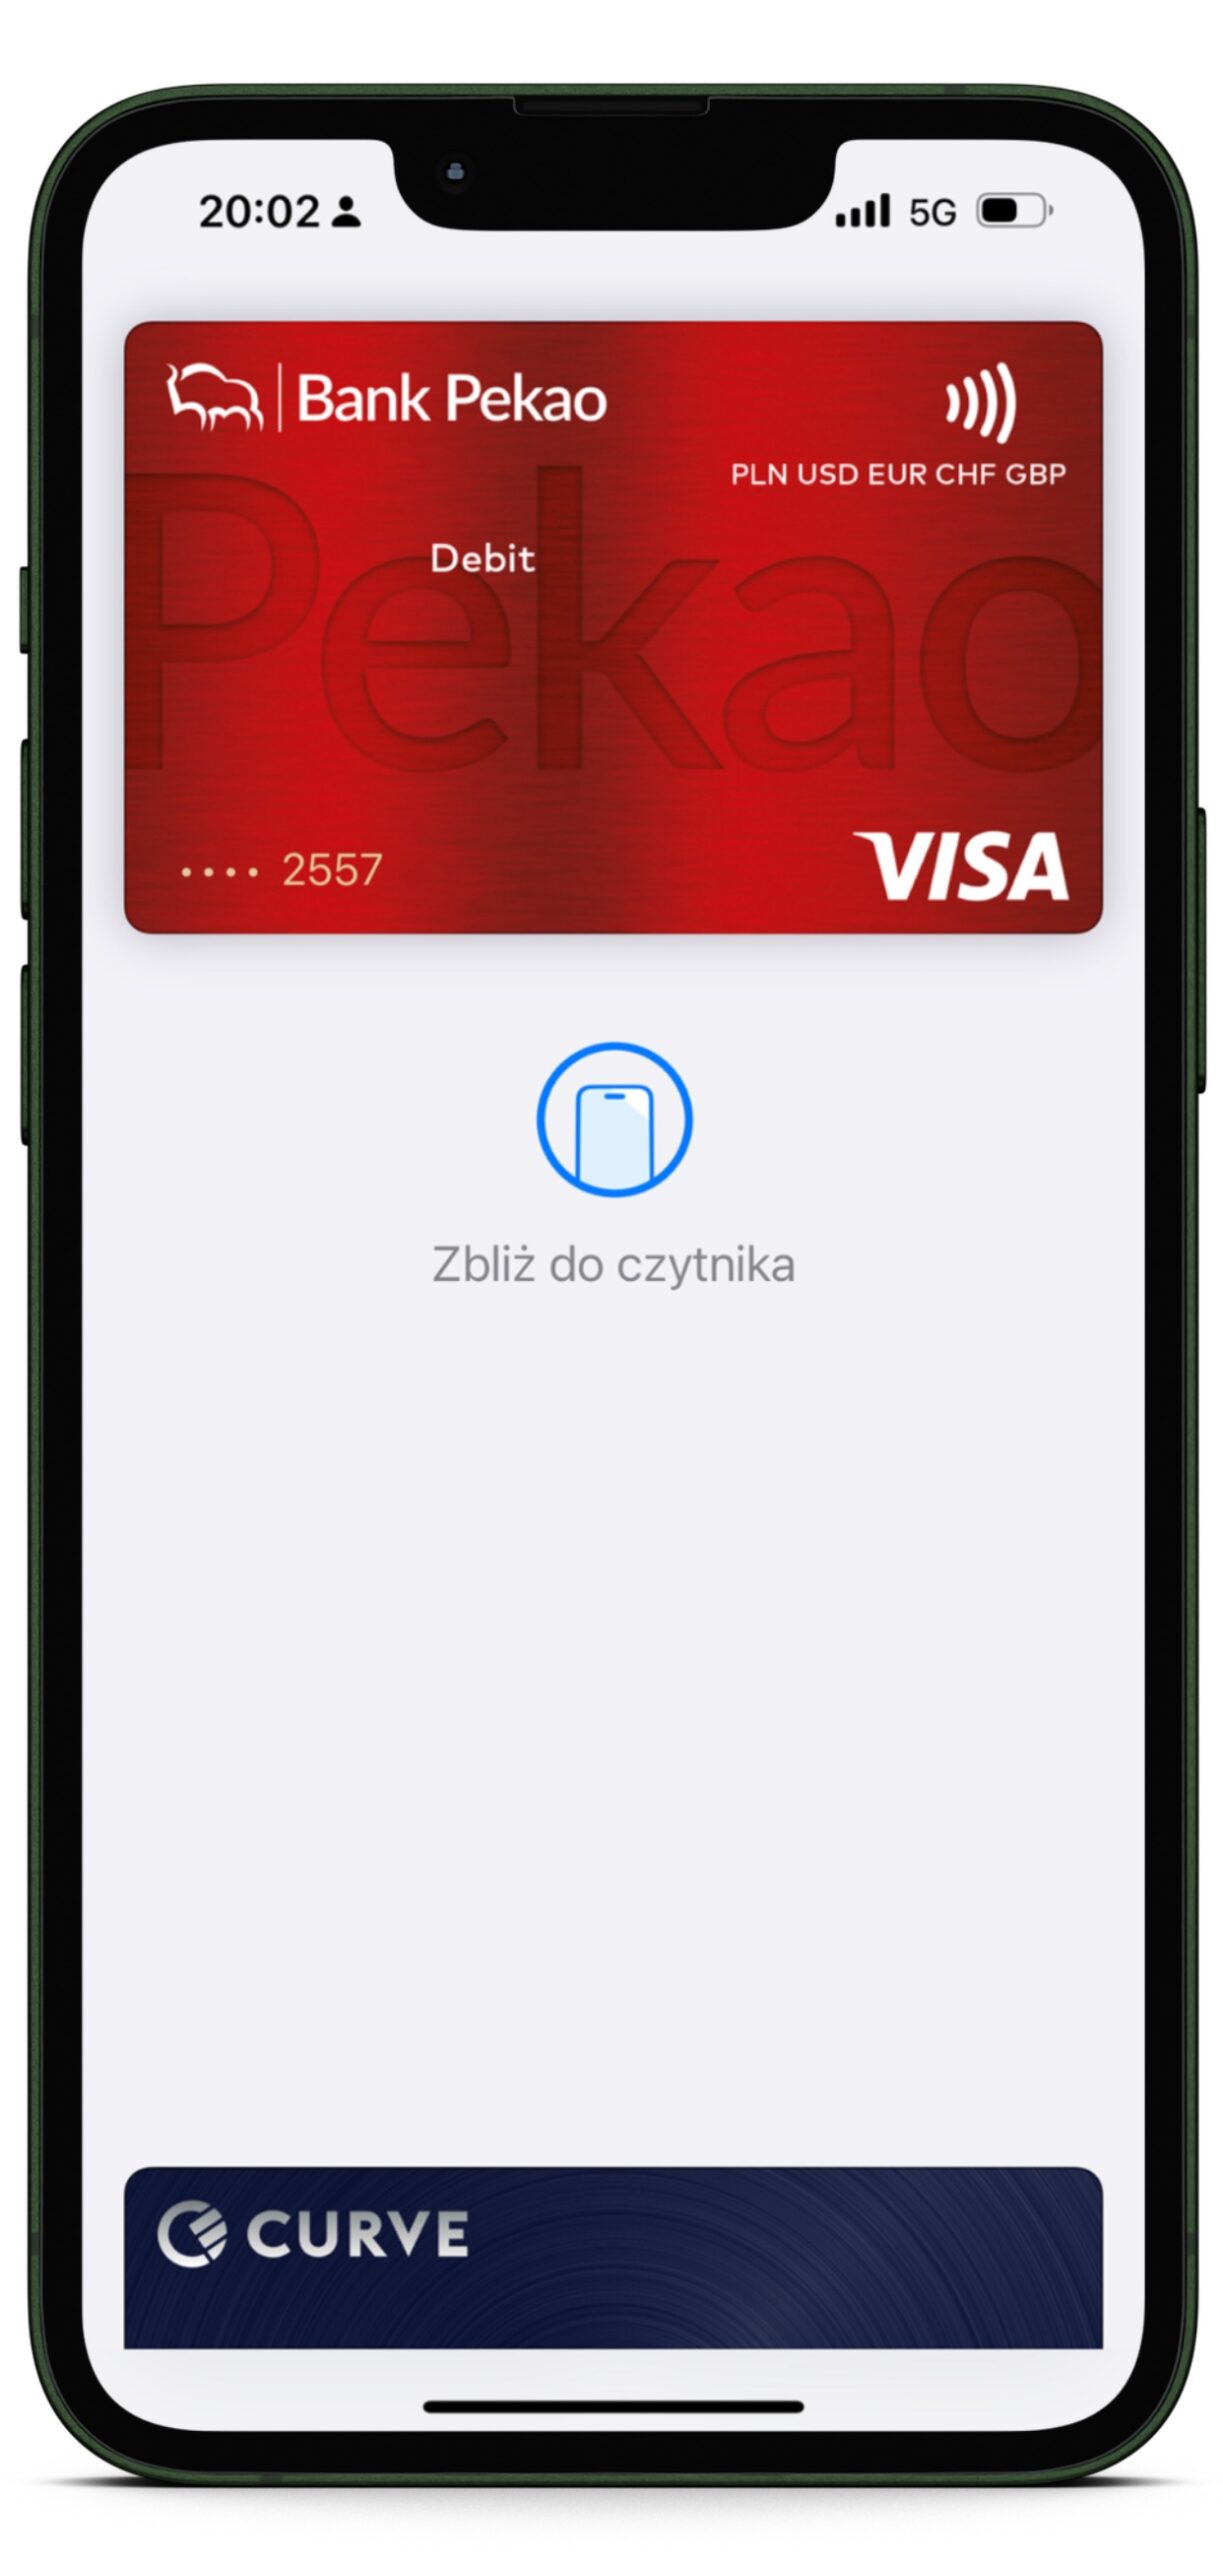 Wirtualna karta płatnicza w aplikacji Apple Pay, umożliwiająca bezgotówkowe transakcje za pomocą telefonu